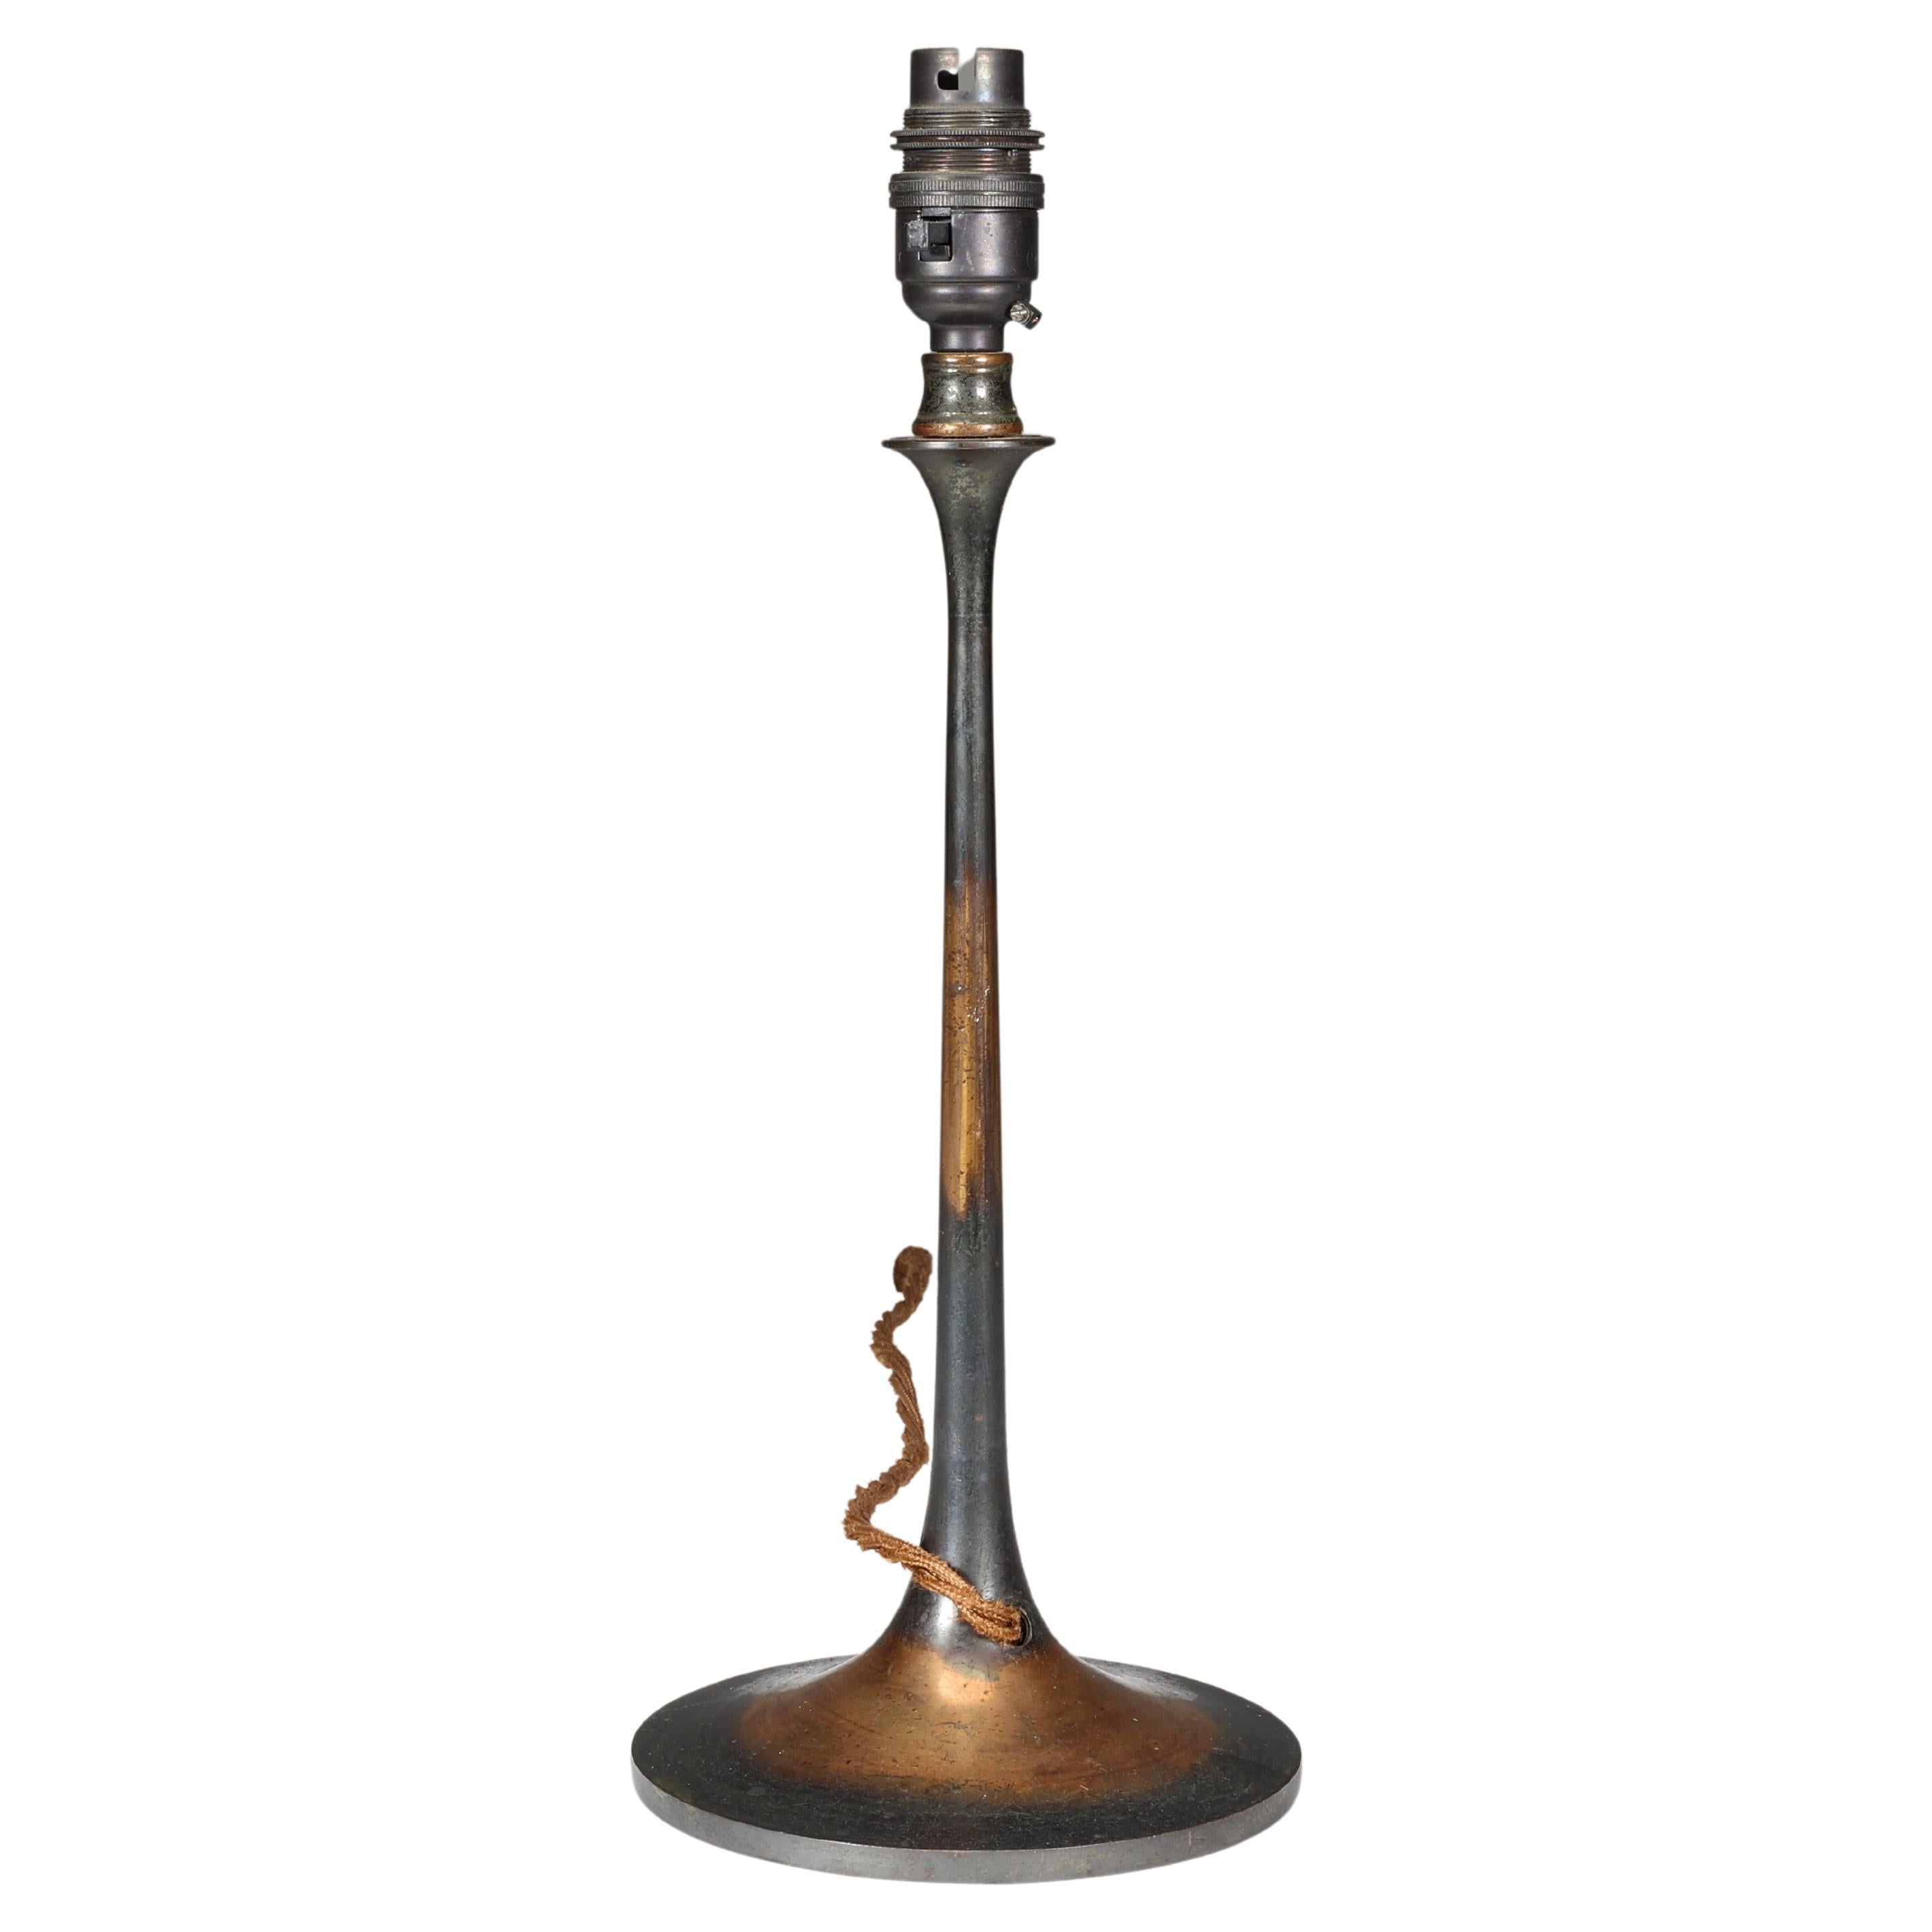 Eine Arts and Crafts-Tischlampe aus Kupfer, professionell neu verkabelt